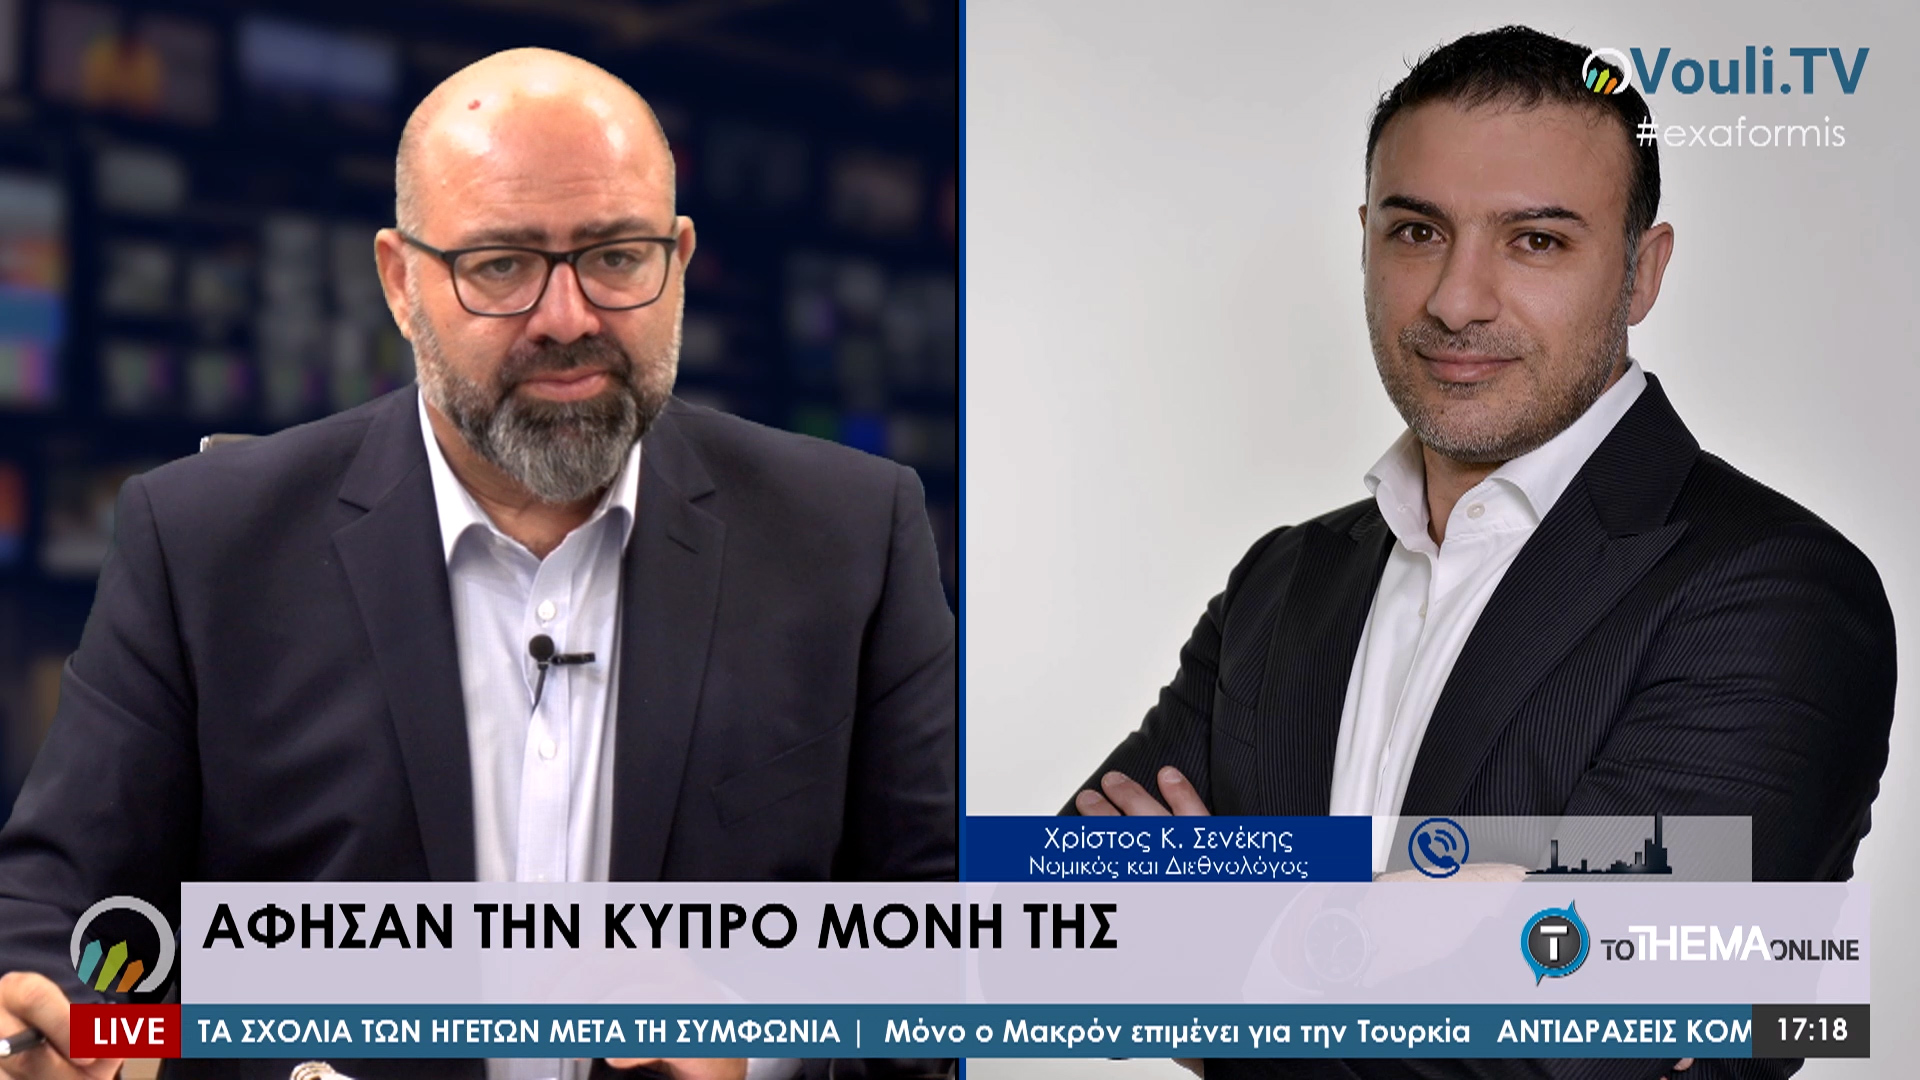 Χρίστος Κ. Σενέκης  - Εξ Αφορμής @Vouli.TV | 02/10/2020